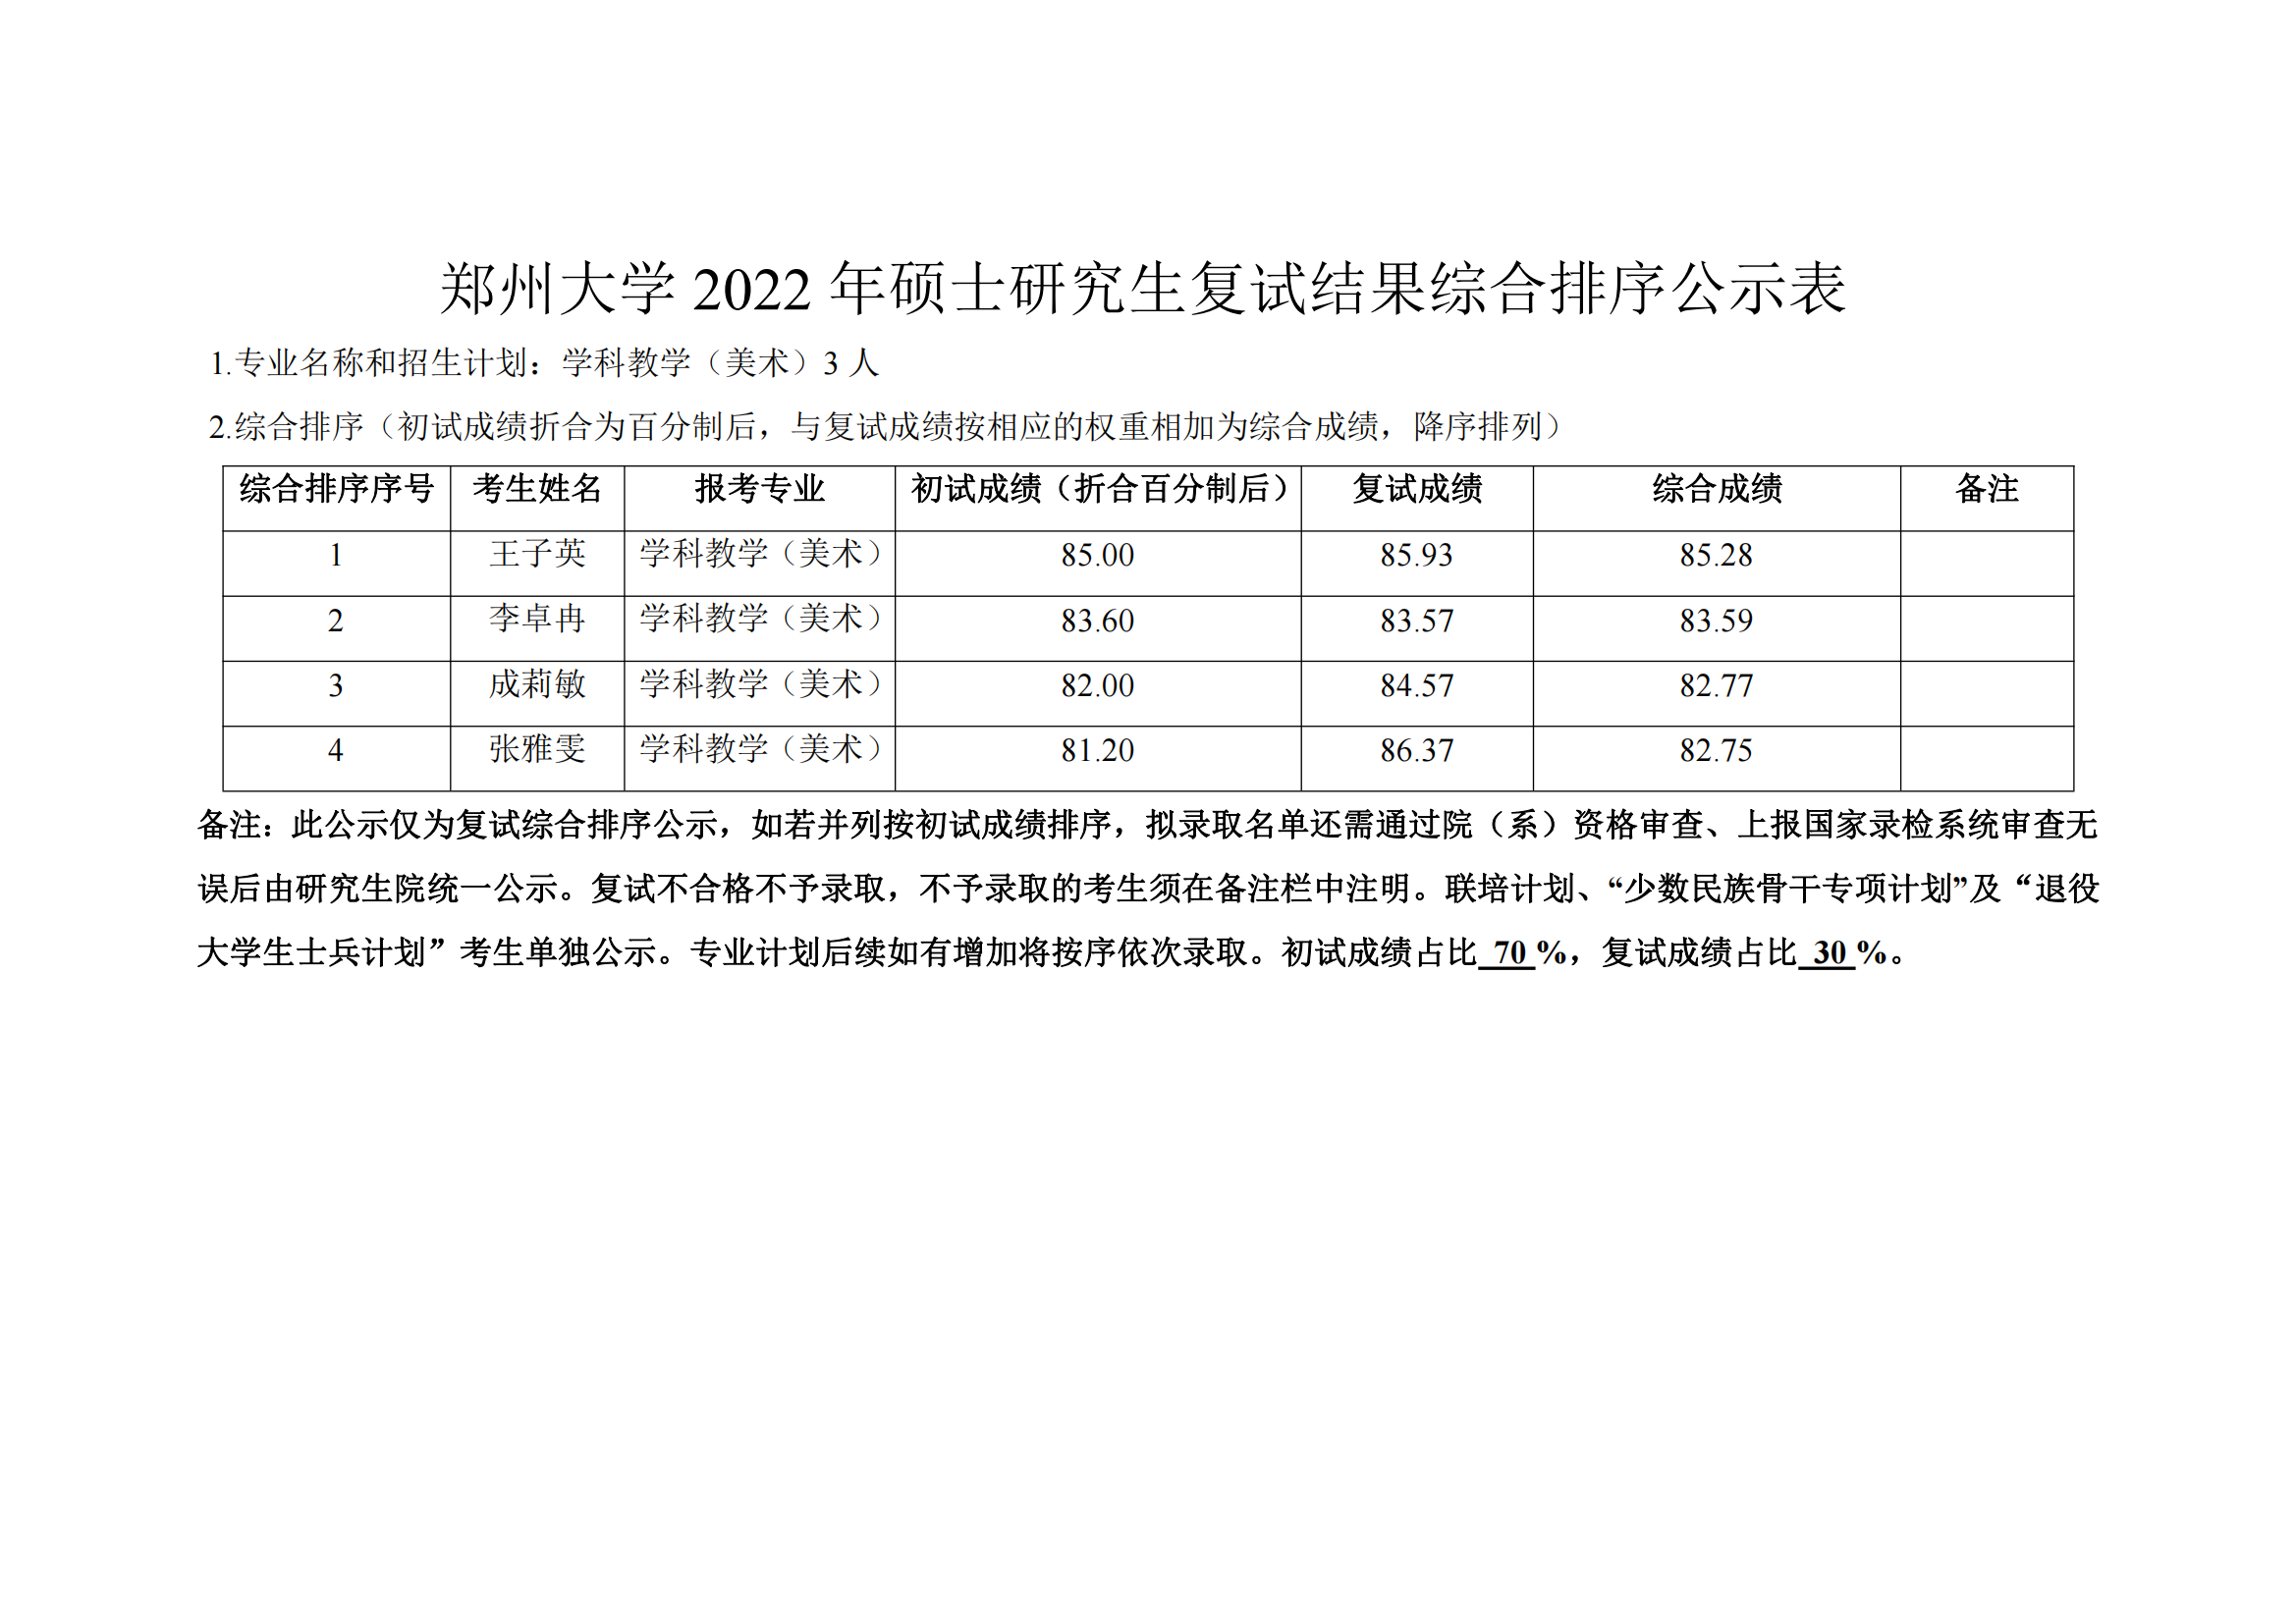 郑州大学2022年硕士研究生复试结果综合排序公示表 第二批_01.png